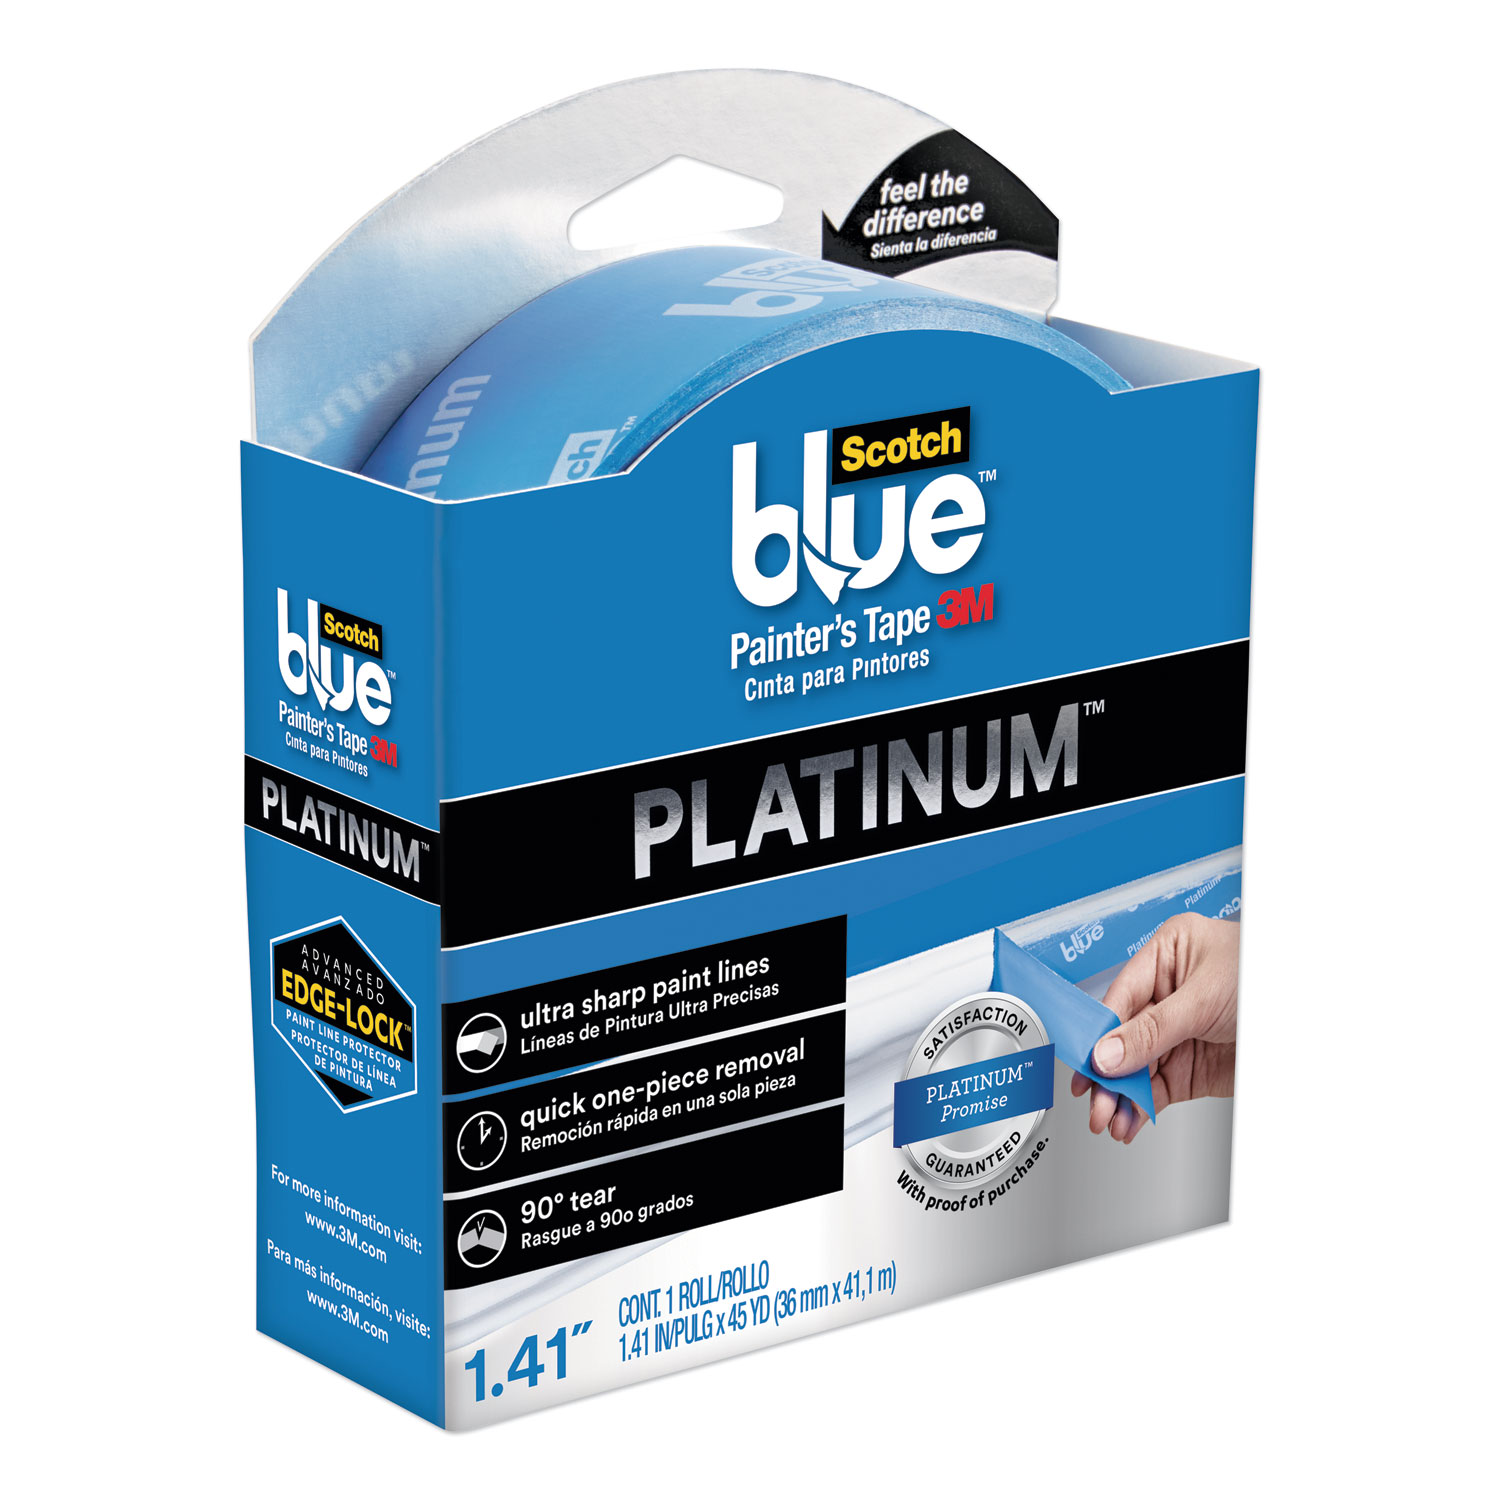 ScotchBlue Platinum Painter's Tape, 1.41